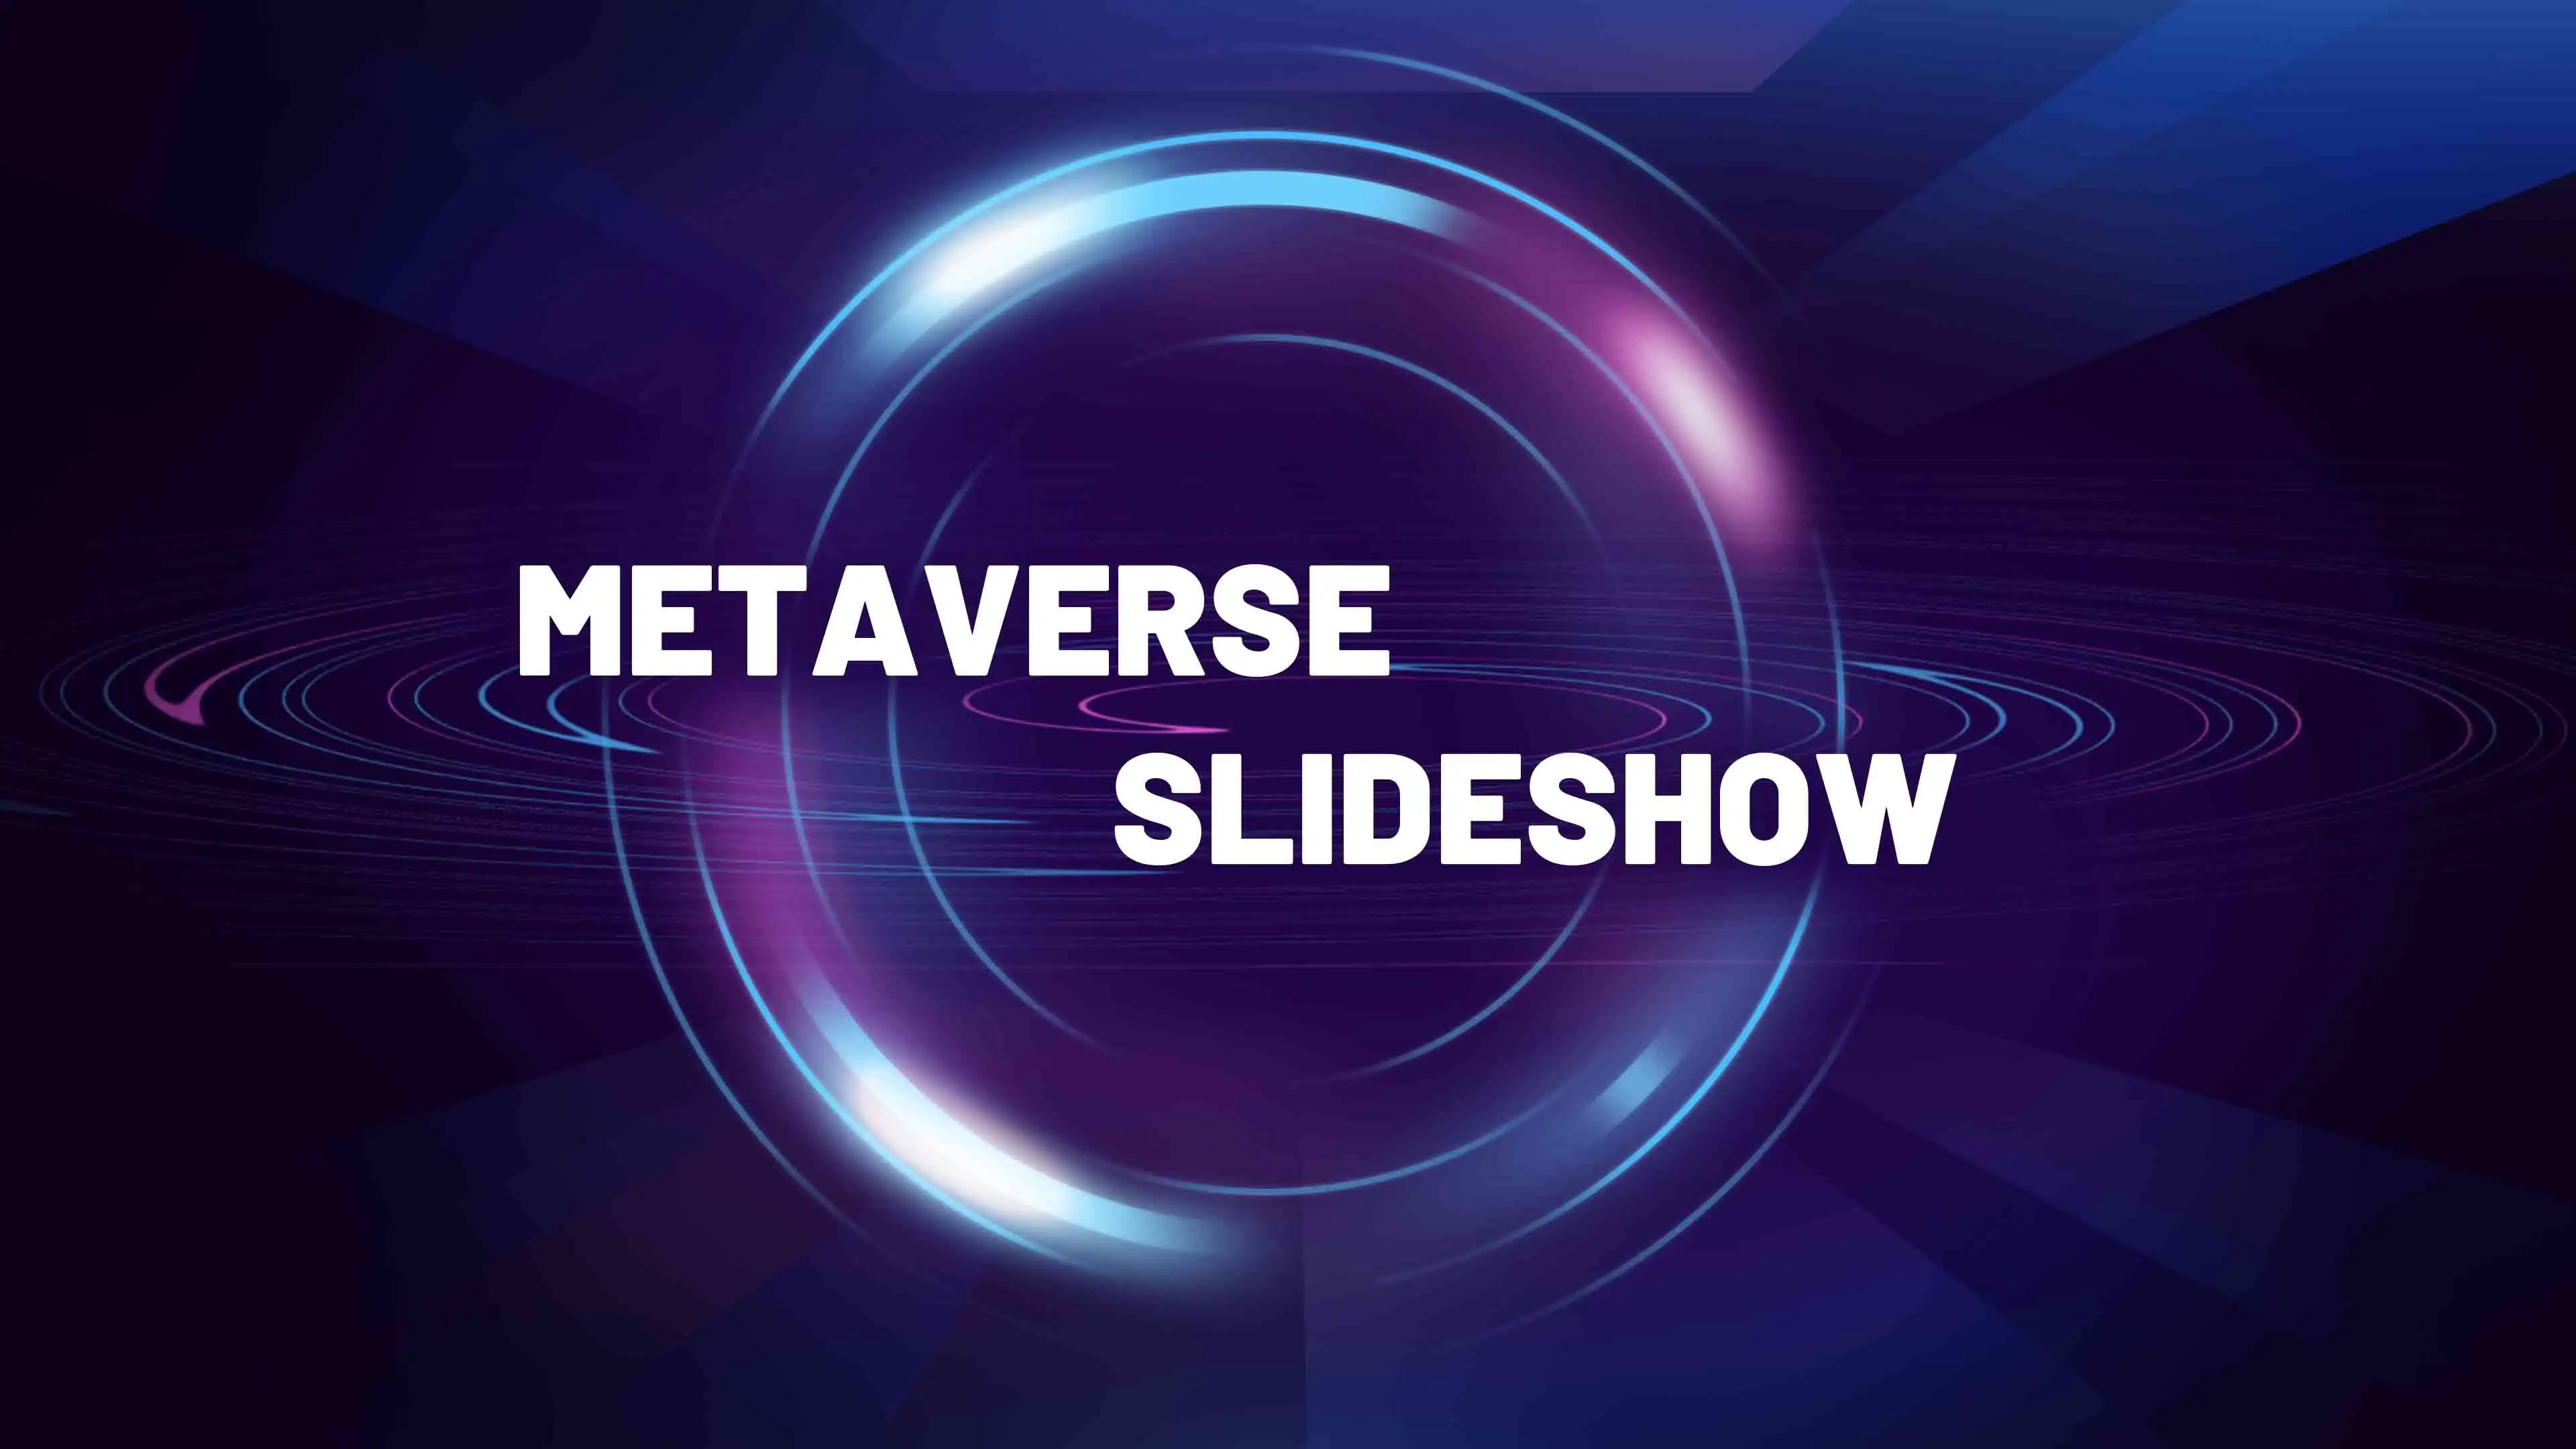 Metaverse Slideshow